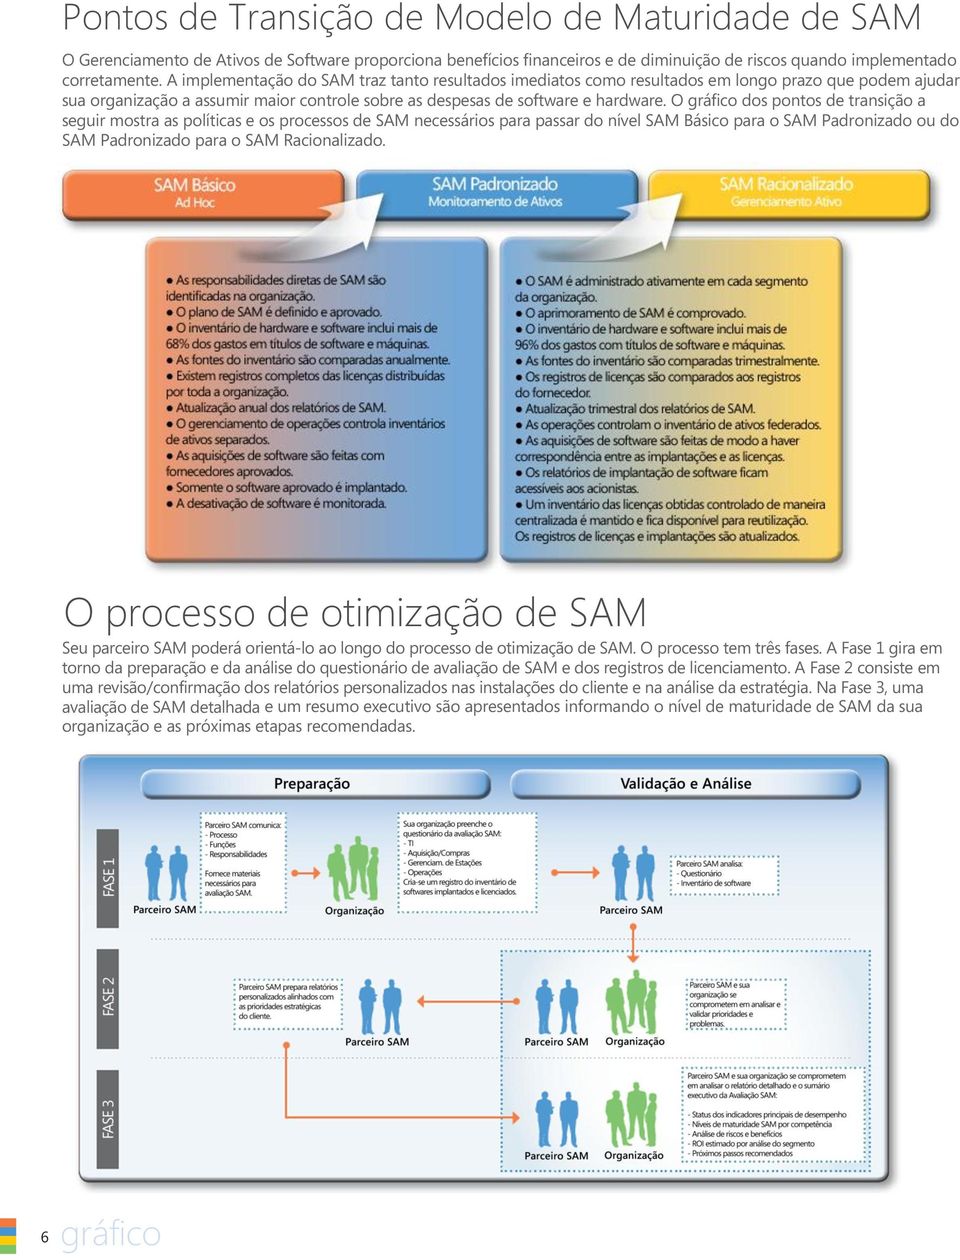 O gráfico dos pontos de transição a seguir mostra as políticas e os processos de SAM necessários para passar do nível SAM Básico para o SAM Padronizado ou do SAM Padronizado para o SAM Racionalizado.